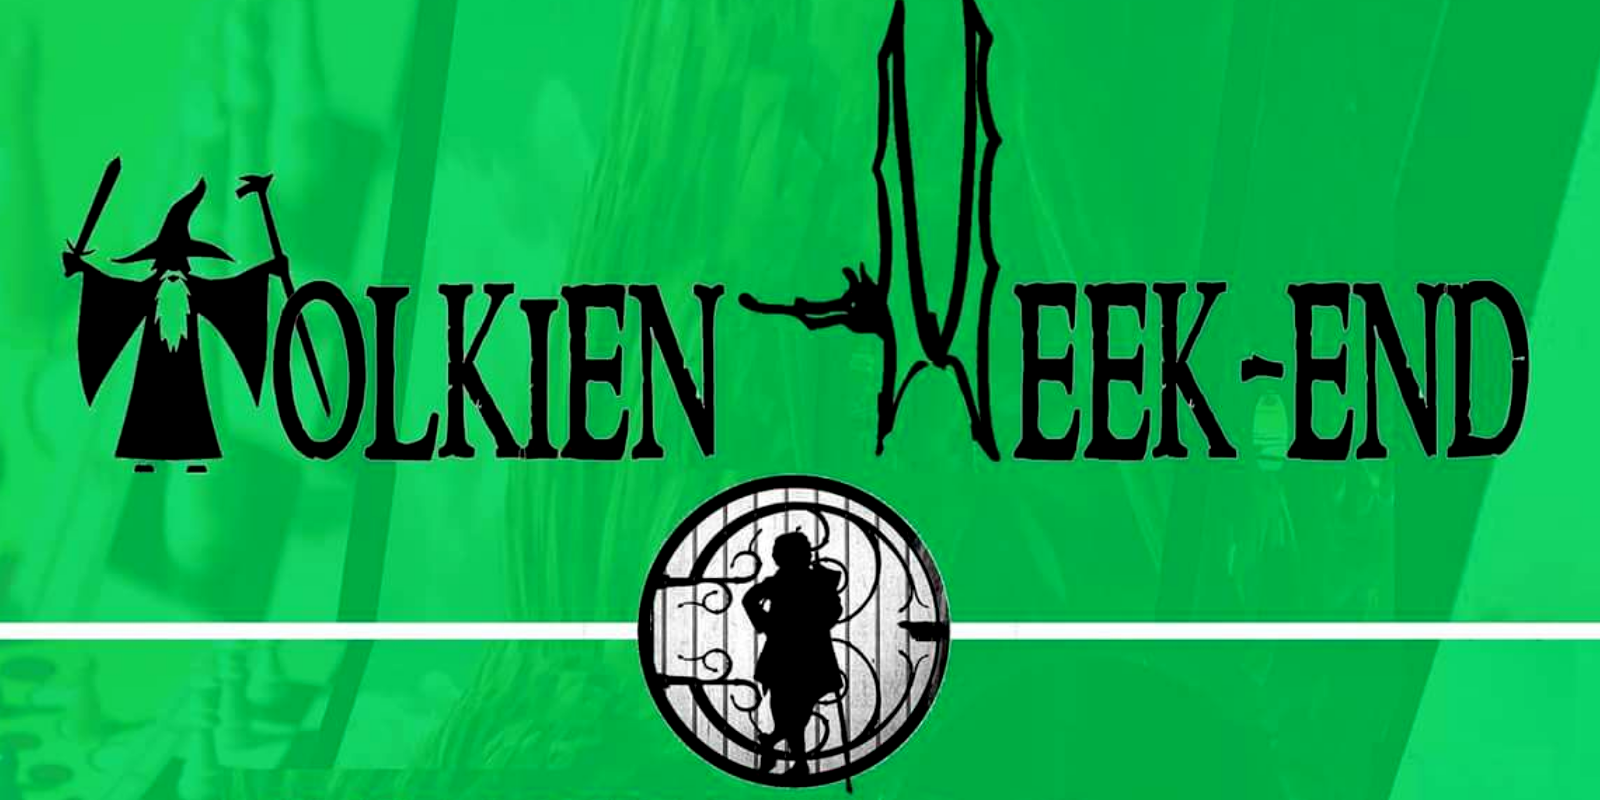 Tolkien Week-end al 4Geek Festival